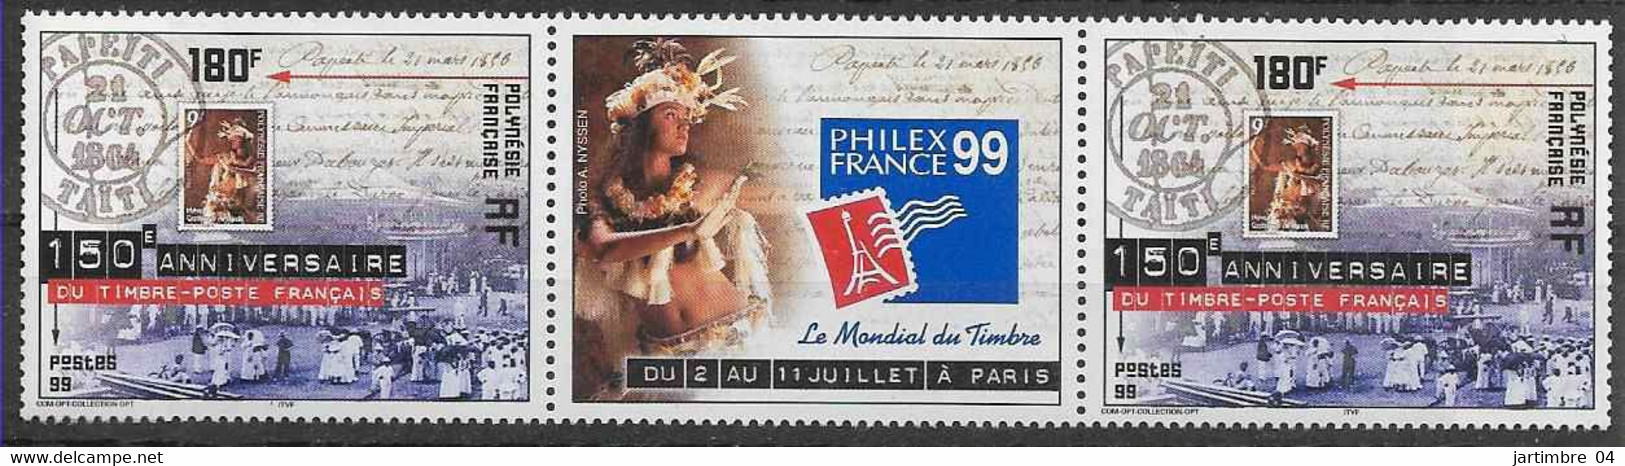 1999 POLYNESIE FRANCAISE 602** Philexfrance, Timbre Sur Timbre, Paire Avec Vignette - Ongebruikt